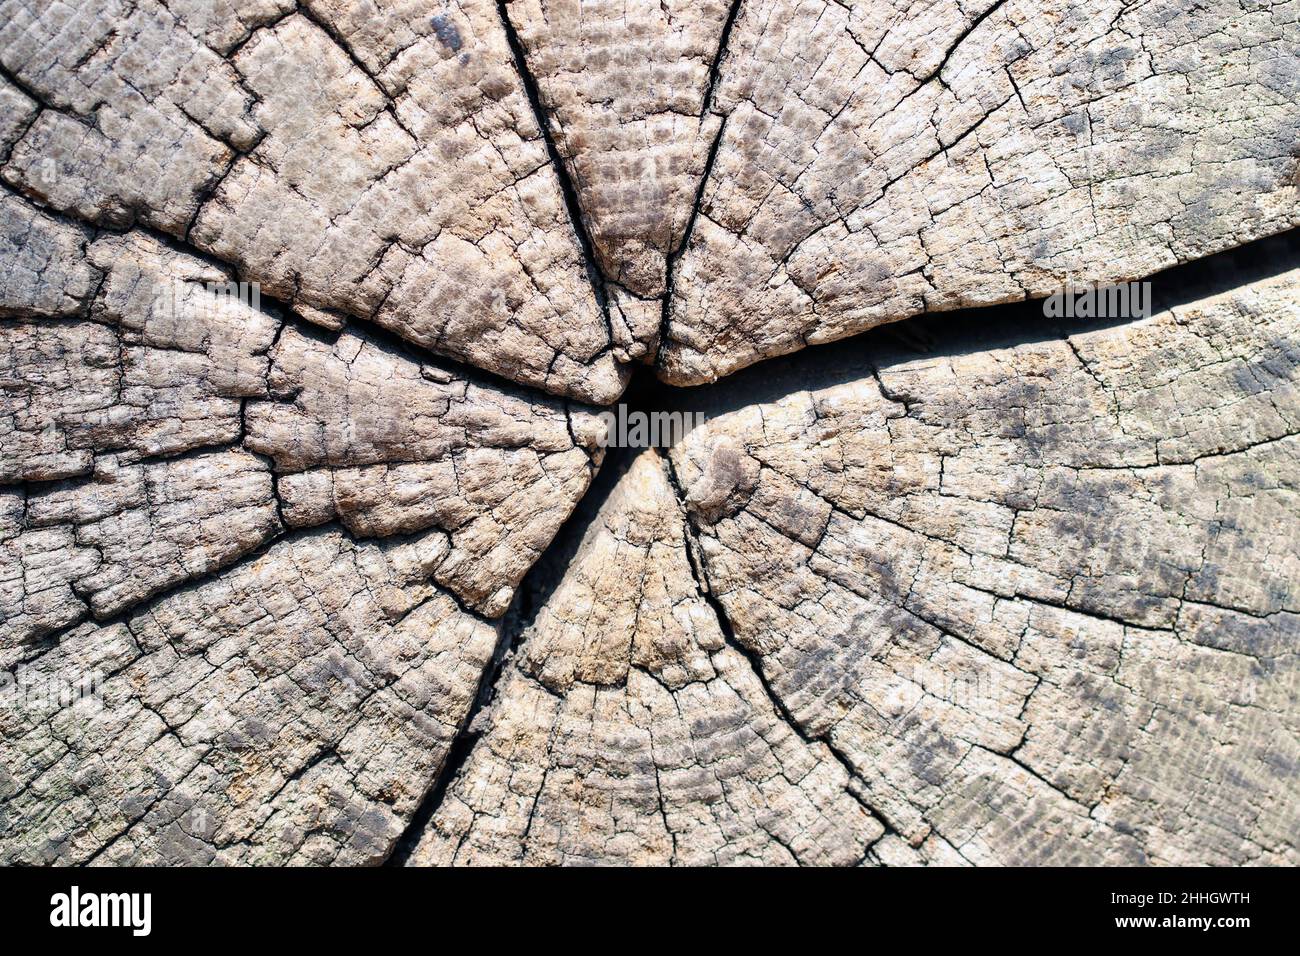 Hintergrund mit Holzstruktur. Nahaufnahme eines alten, geschnittenen Baumstammes mit Rissen und Jahresringen. Vintage-Stil mit Holzhintergrund. Makro. Stockfoto